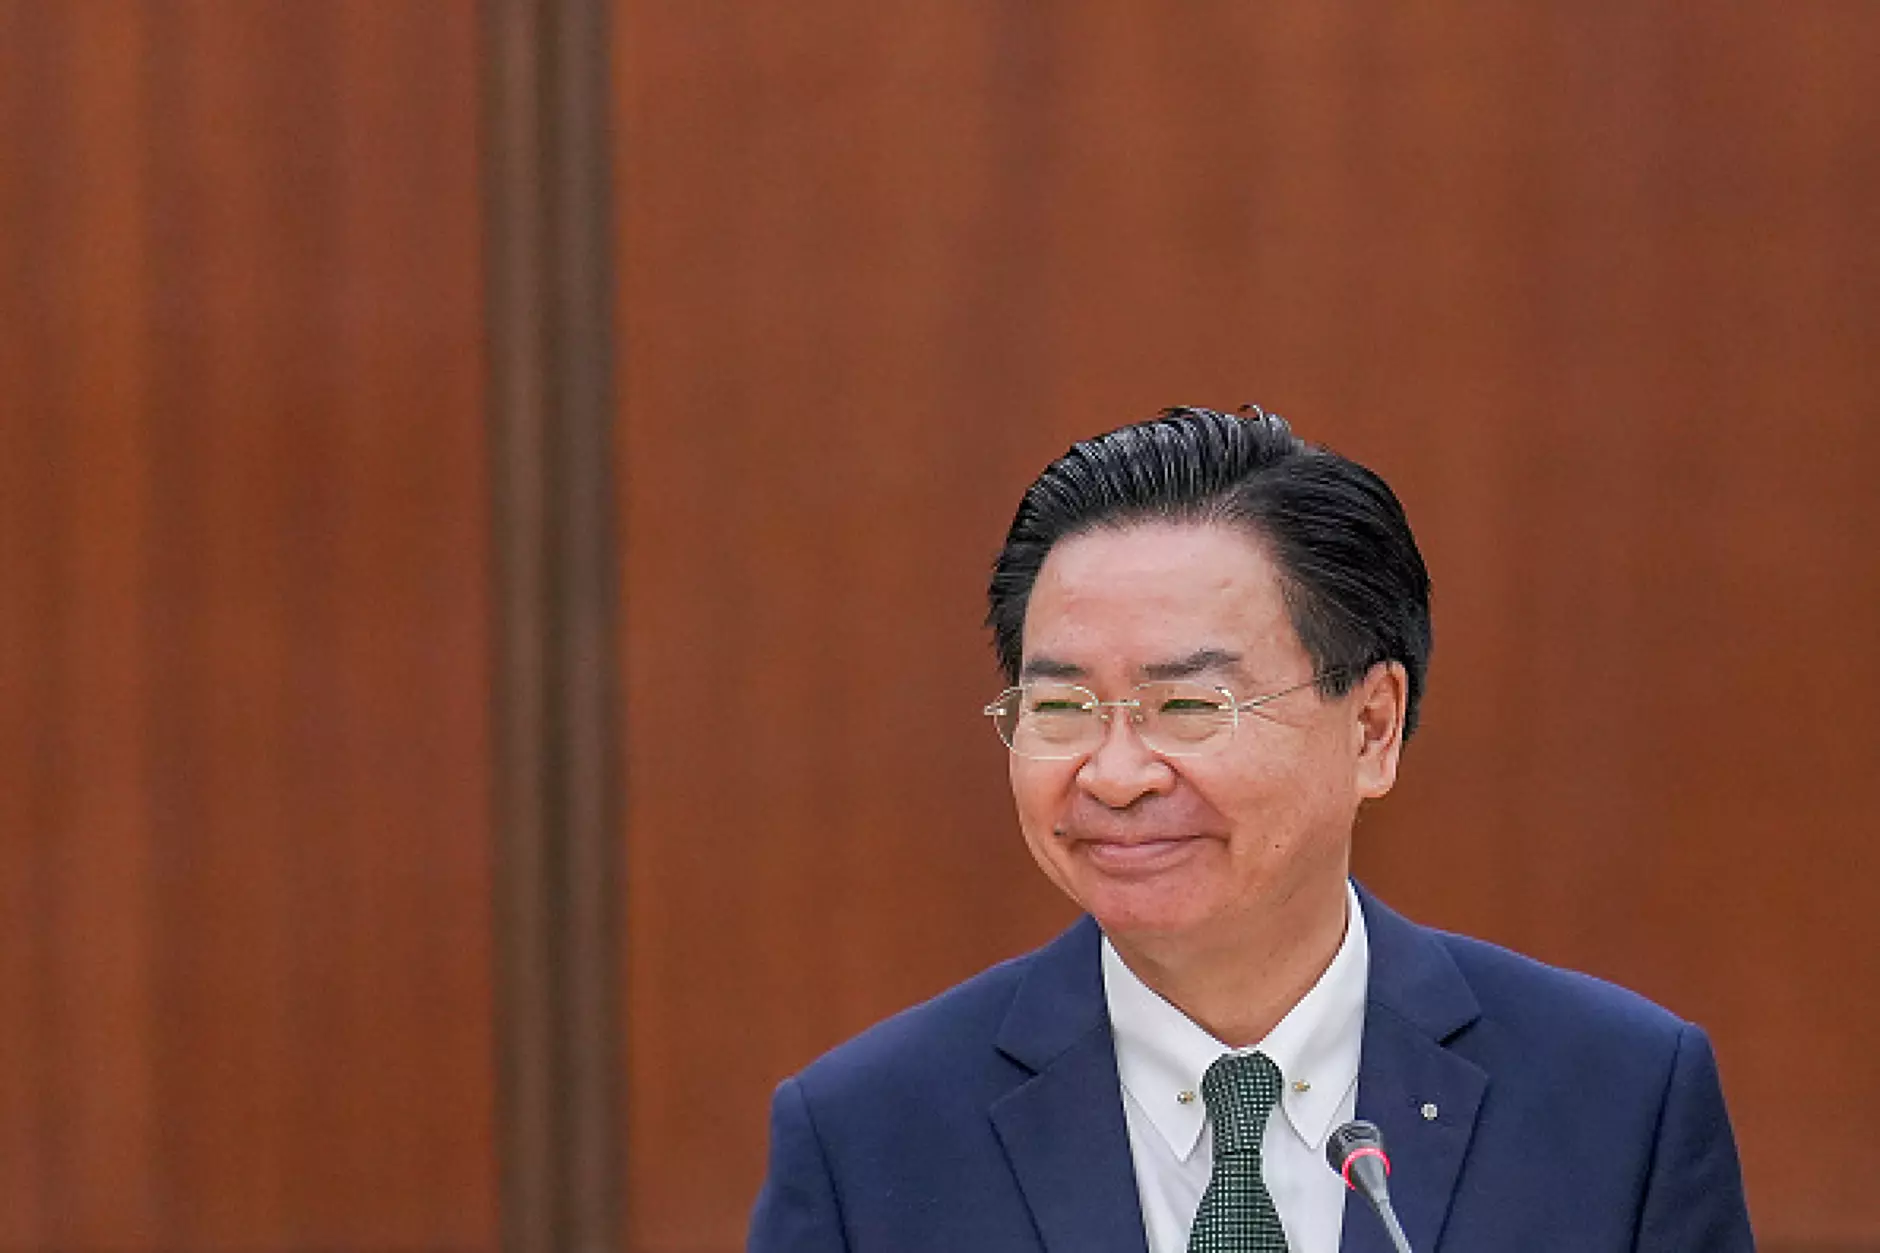 Външният министър на Тайван прогнозира кога Китай може да нахлуе на острова